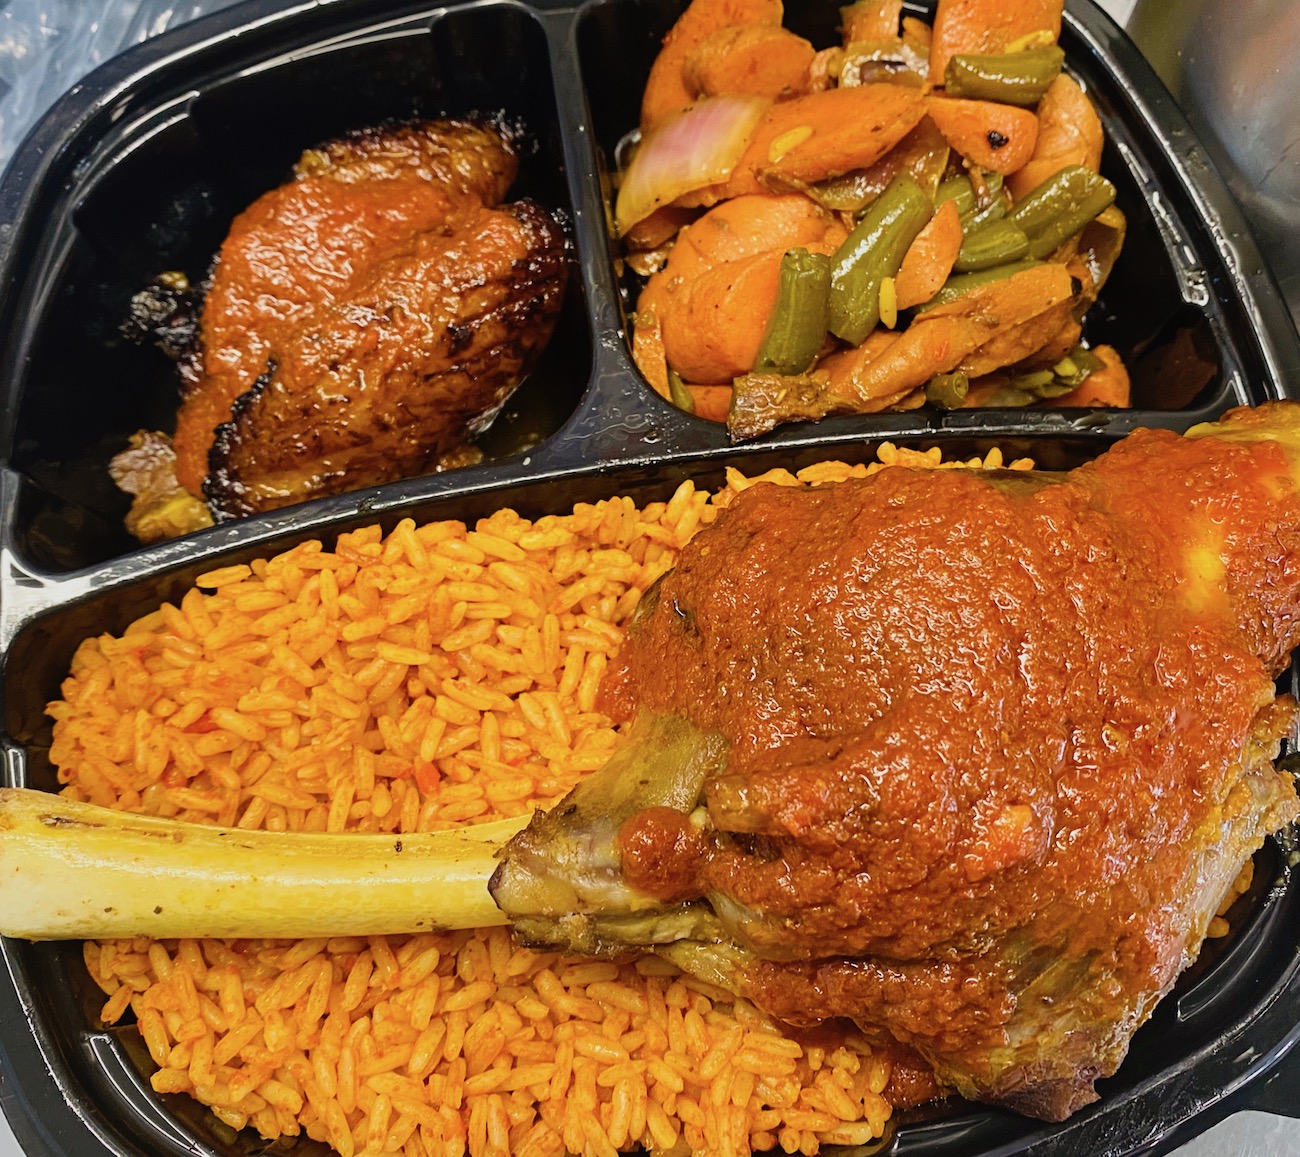 New Detroit food trucks find their niche serving Jamaican, Nigerian